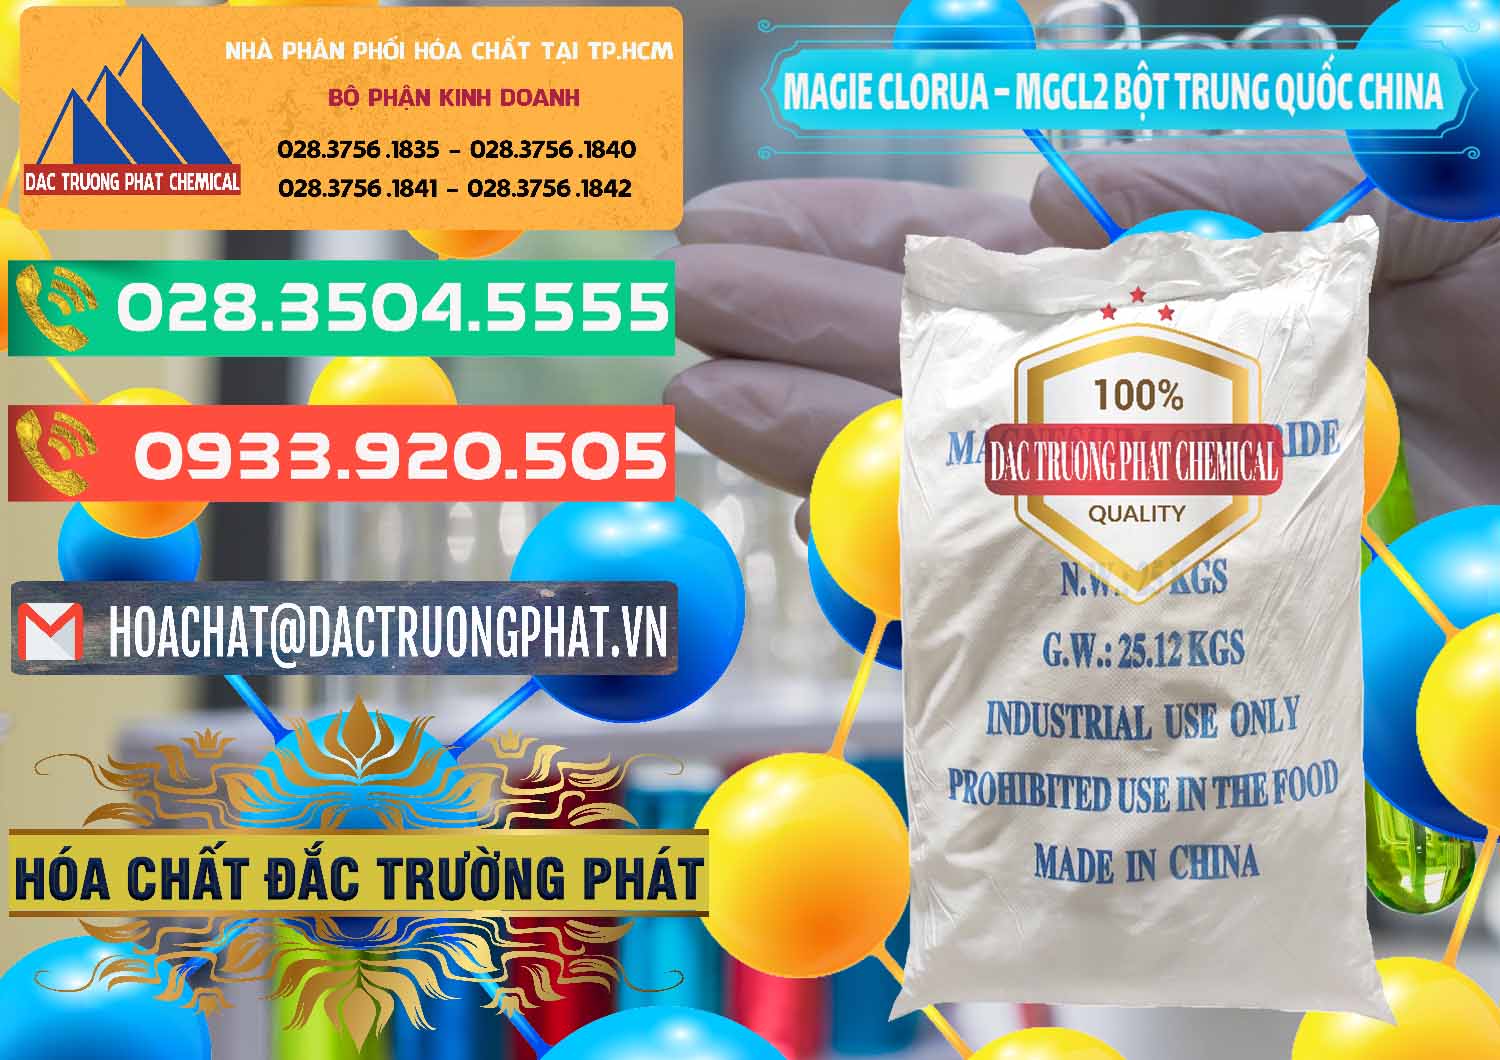 Đơn vị chuyên bán và phân phối Magie Clorua – MGCL2 96% Dạng Bột Bao Chữ Xanh Trung Quốc China - 0207 - Nơi cung cấp _ phân phối hóa chất tại TP.HCM - congtyhoachat.com.vn